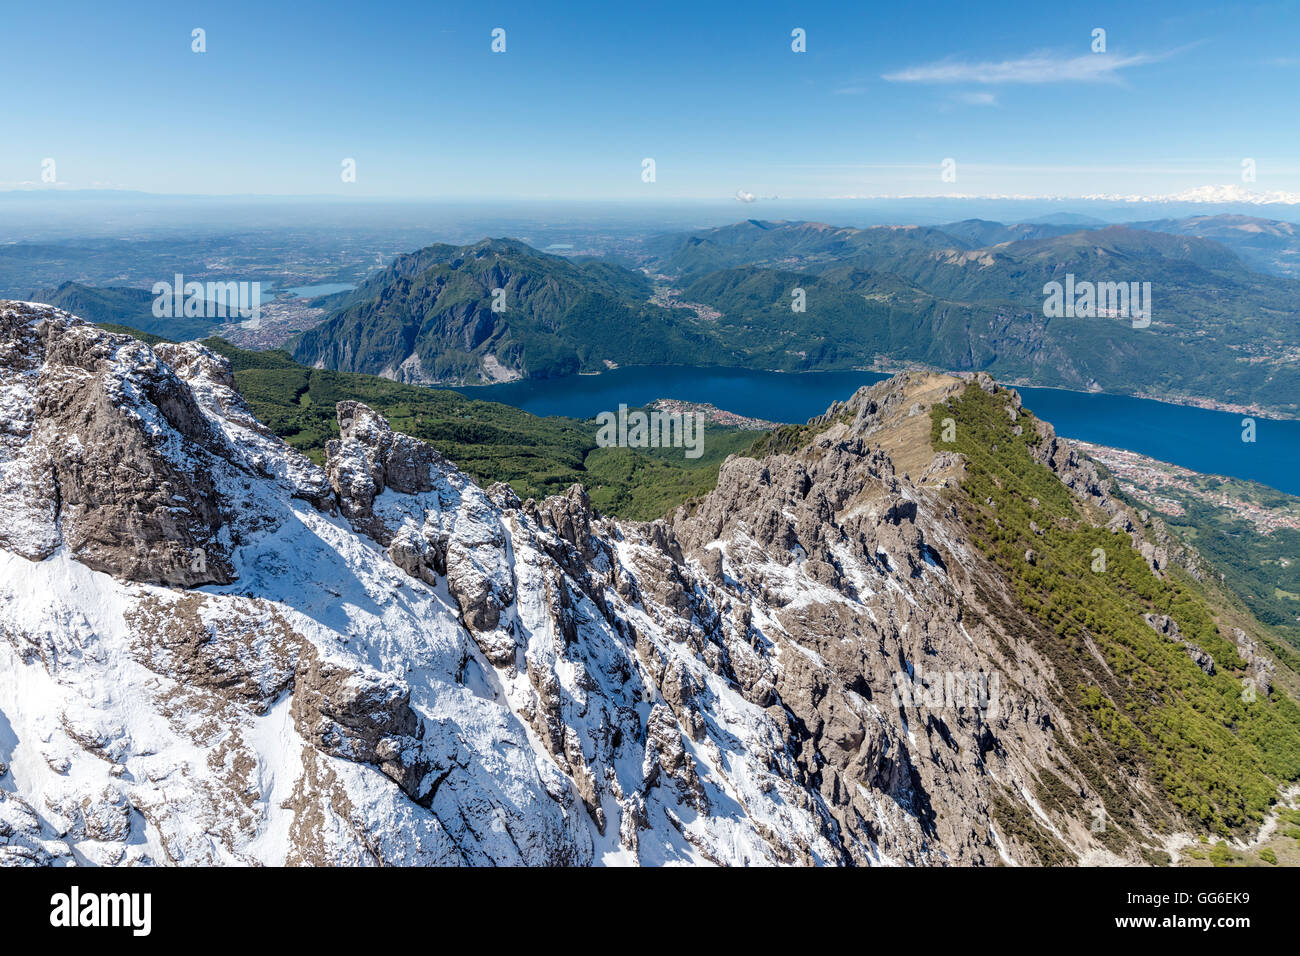 Vista aerea delle creste innevate della Grignetta montagna con il lago di Como in background, provincia di Lecco, Lombardia, Italia Foto Stock